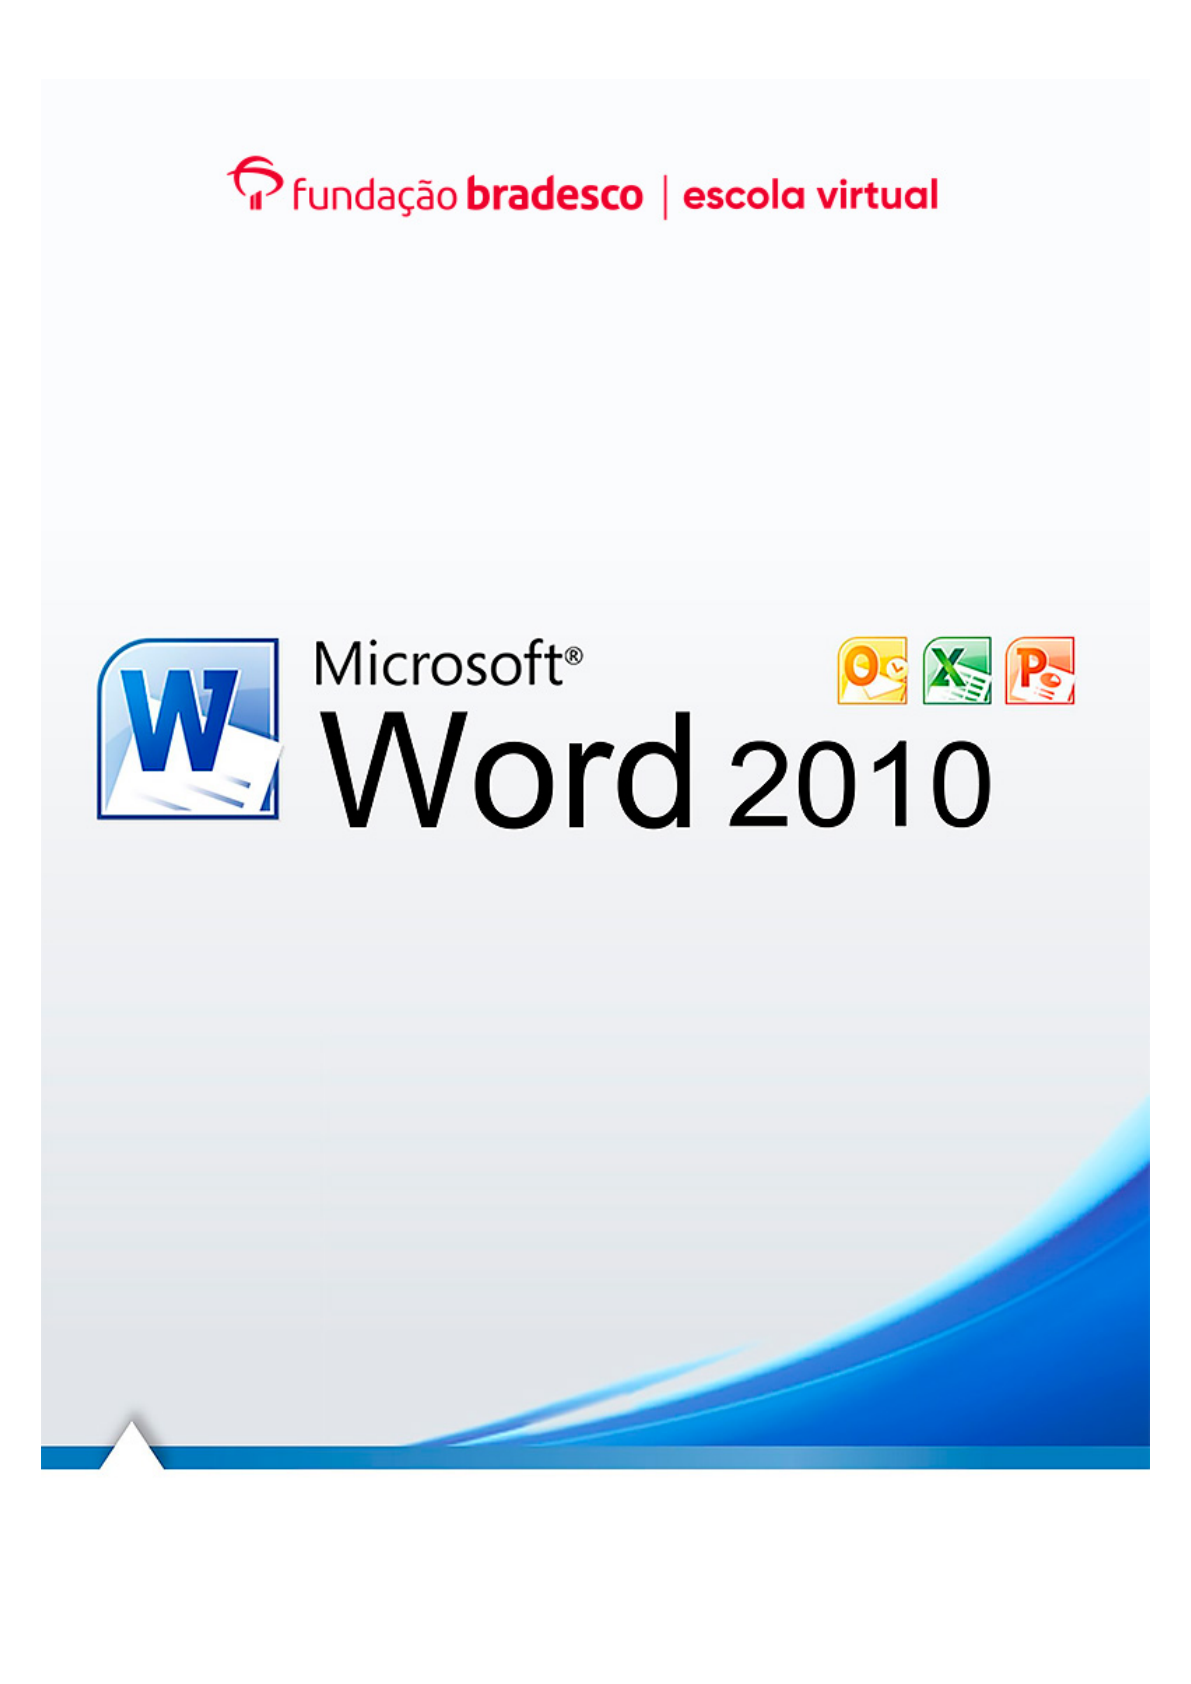 Procurar palavras no dicionário de sinônimos - Suporte da Microsoft